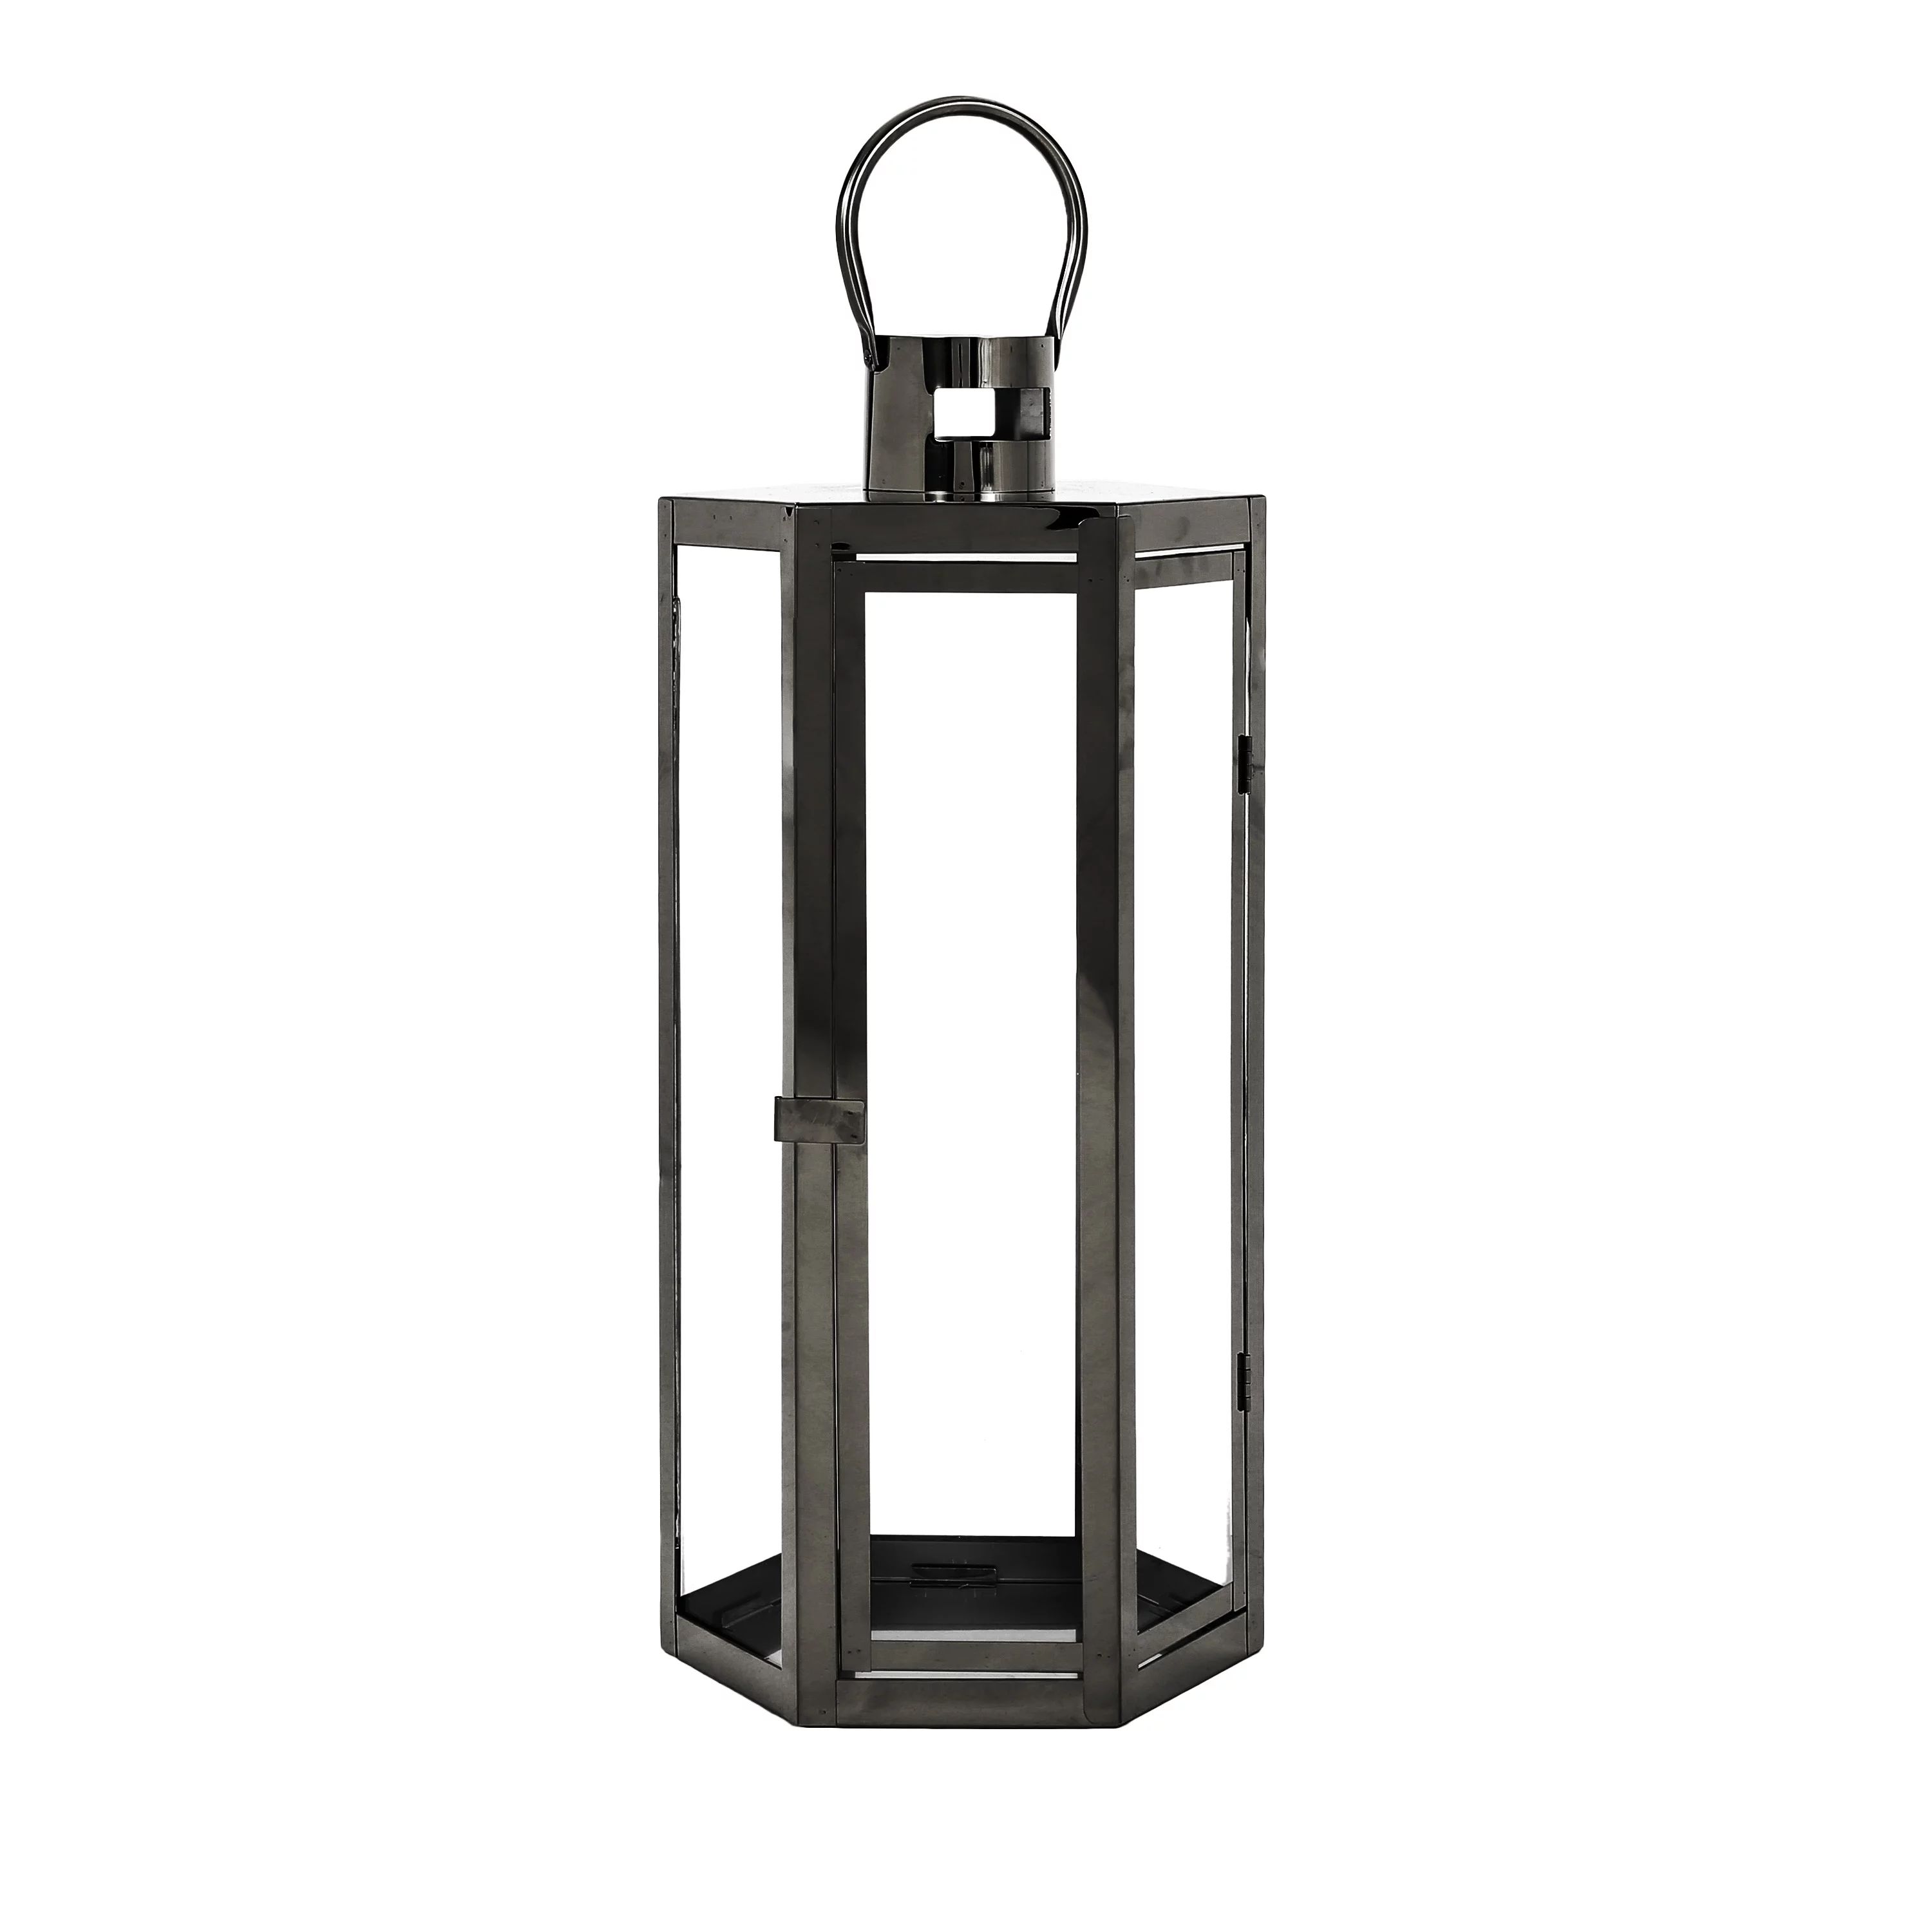 Brianna Stainless Steel Outdoor 23" Lantern, Black | Walmart (US)